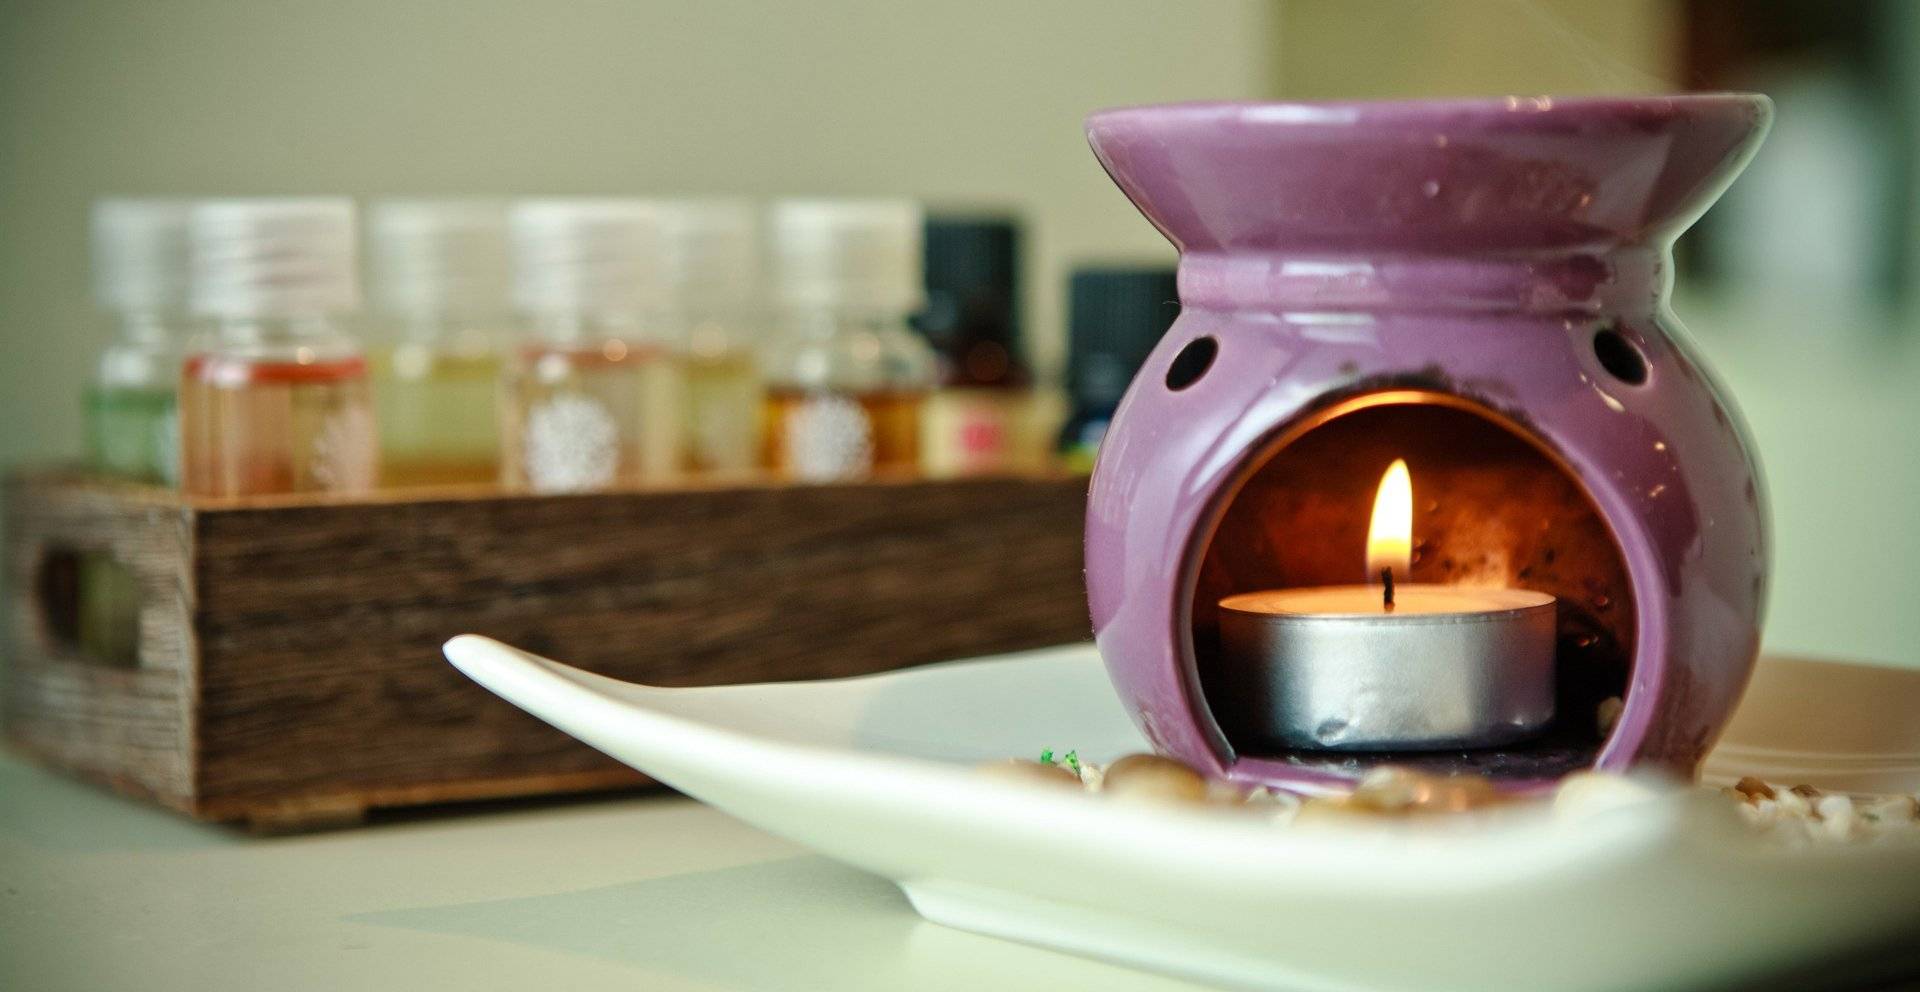 Как сделать приятный запах в квартире: аромамасла, саше или помандер